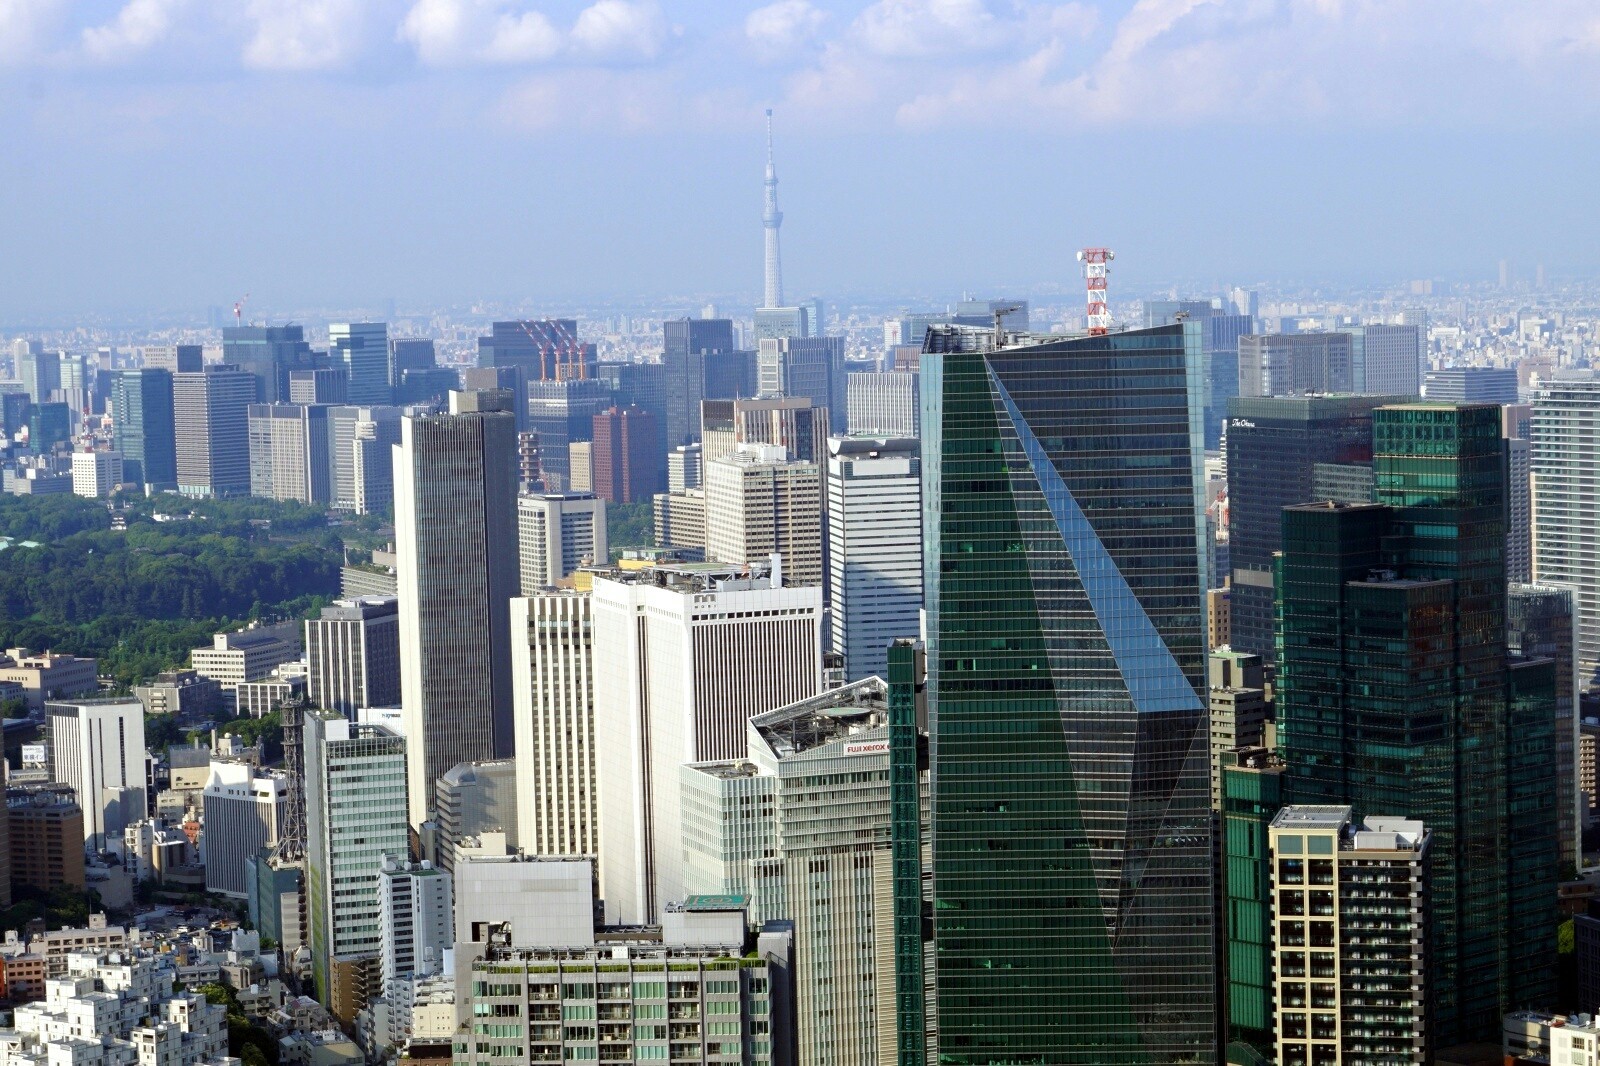 六本木ヒルズ展望台 東京シティビュー スカイデッキ から見た東京都心の超高層ビル群 風景写真